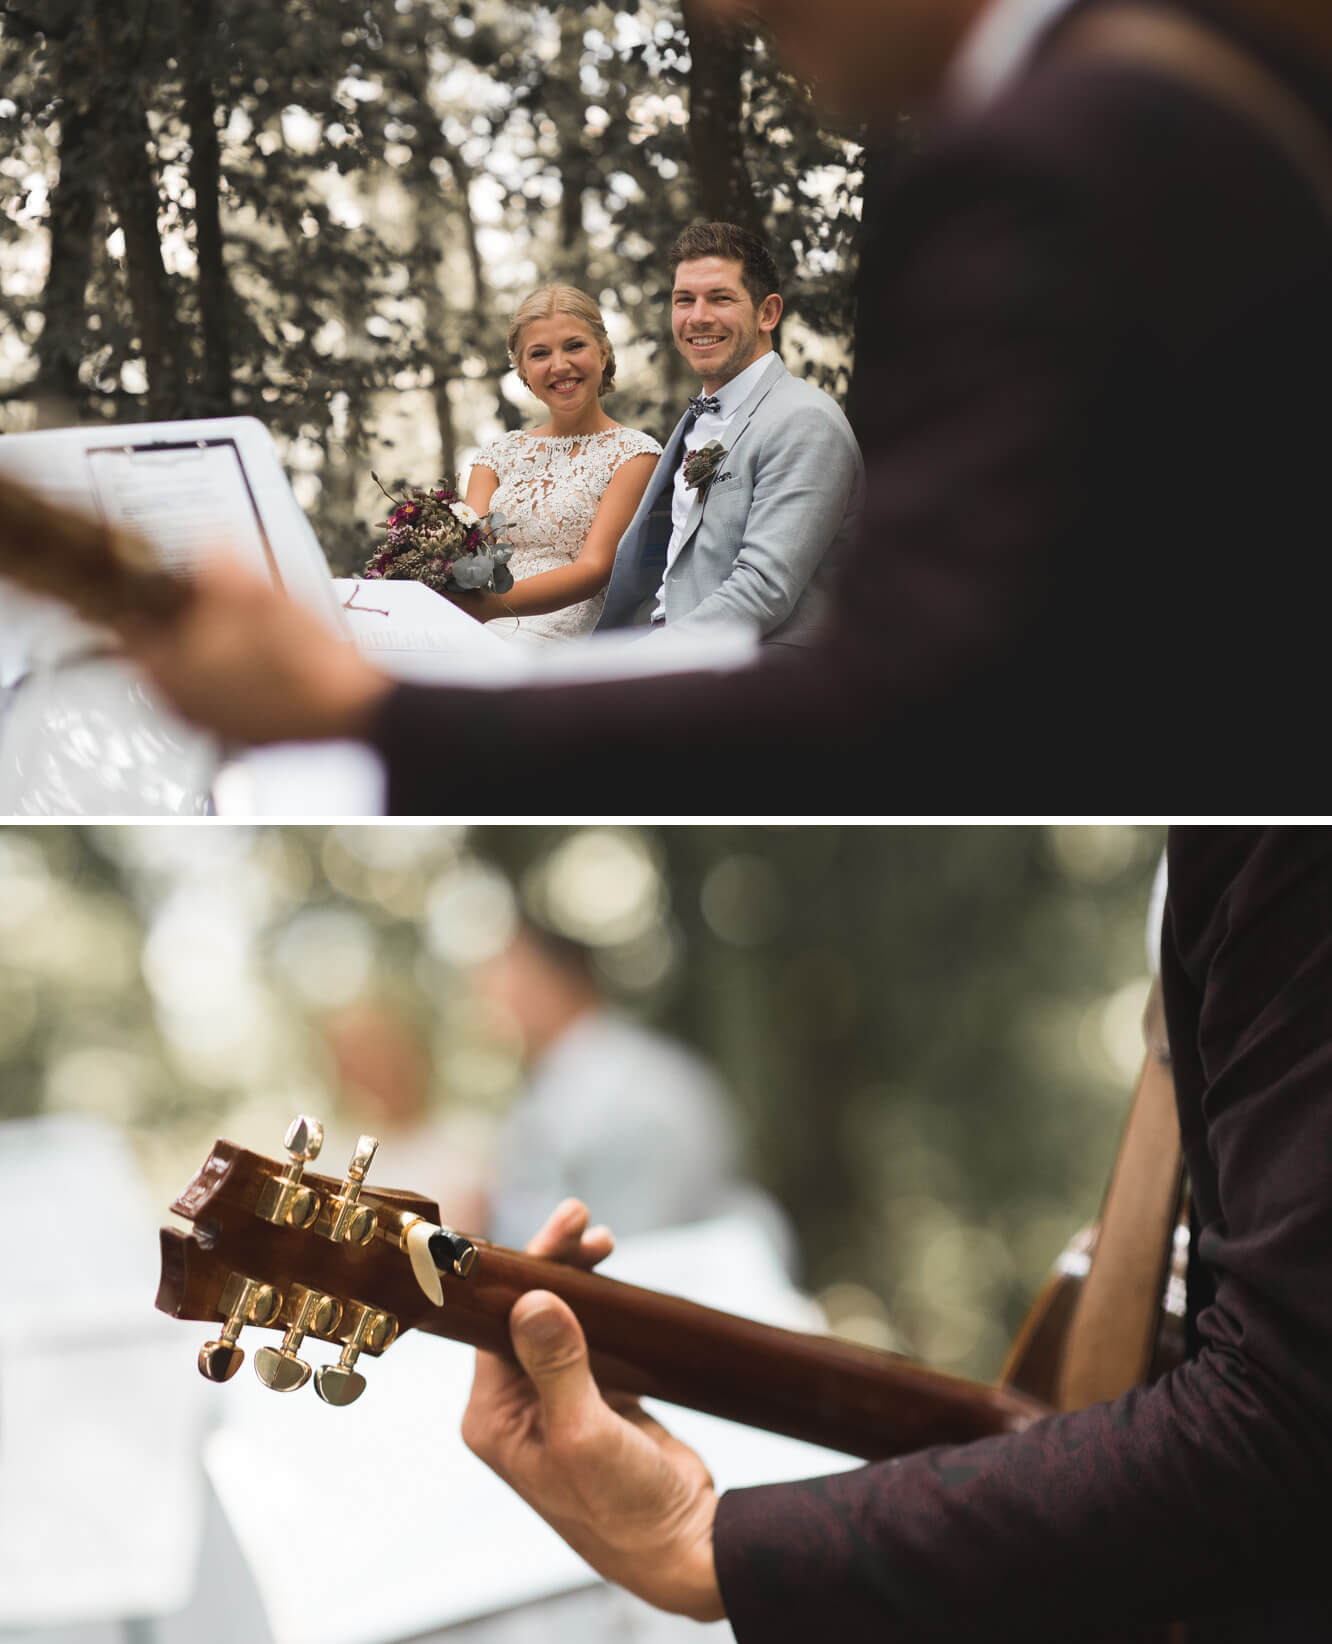 Brautpaar lächelt bei freier Trauung im Wald bei Einkorn Schwäbisch Hall während Jake Voth Musik mit Gitarre und Gesang spielt.